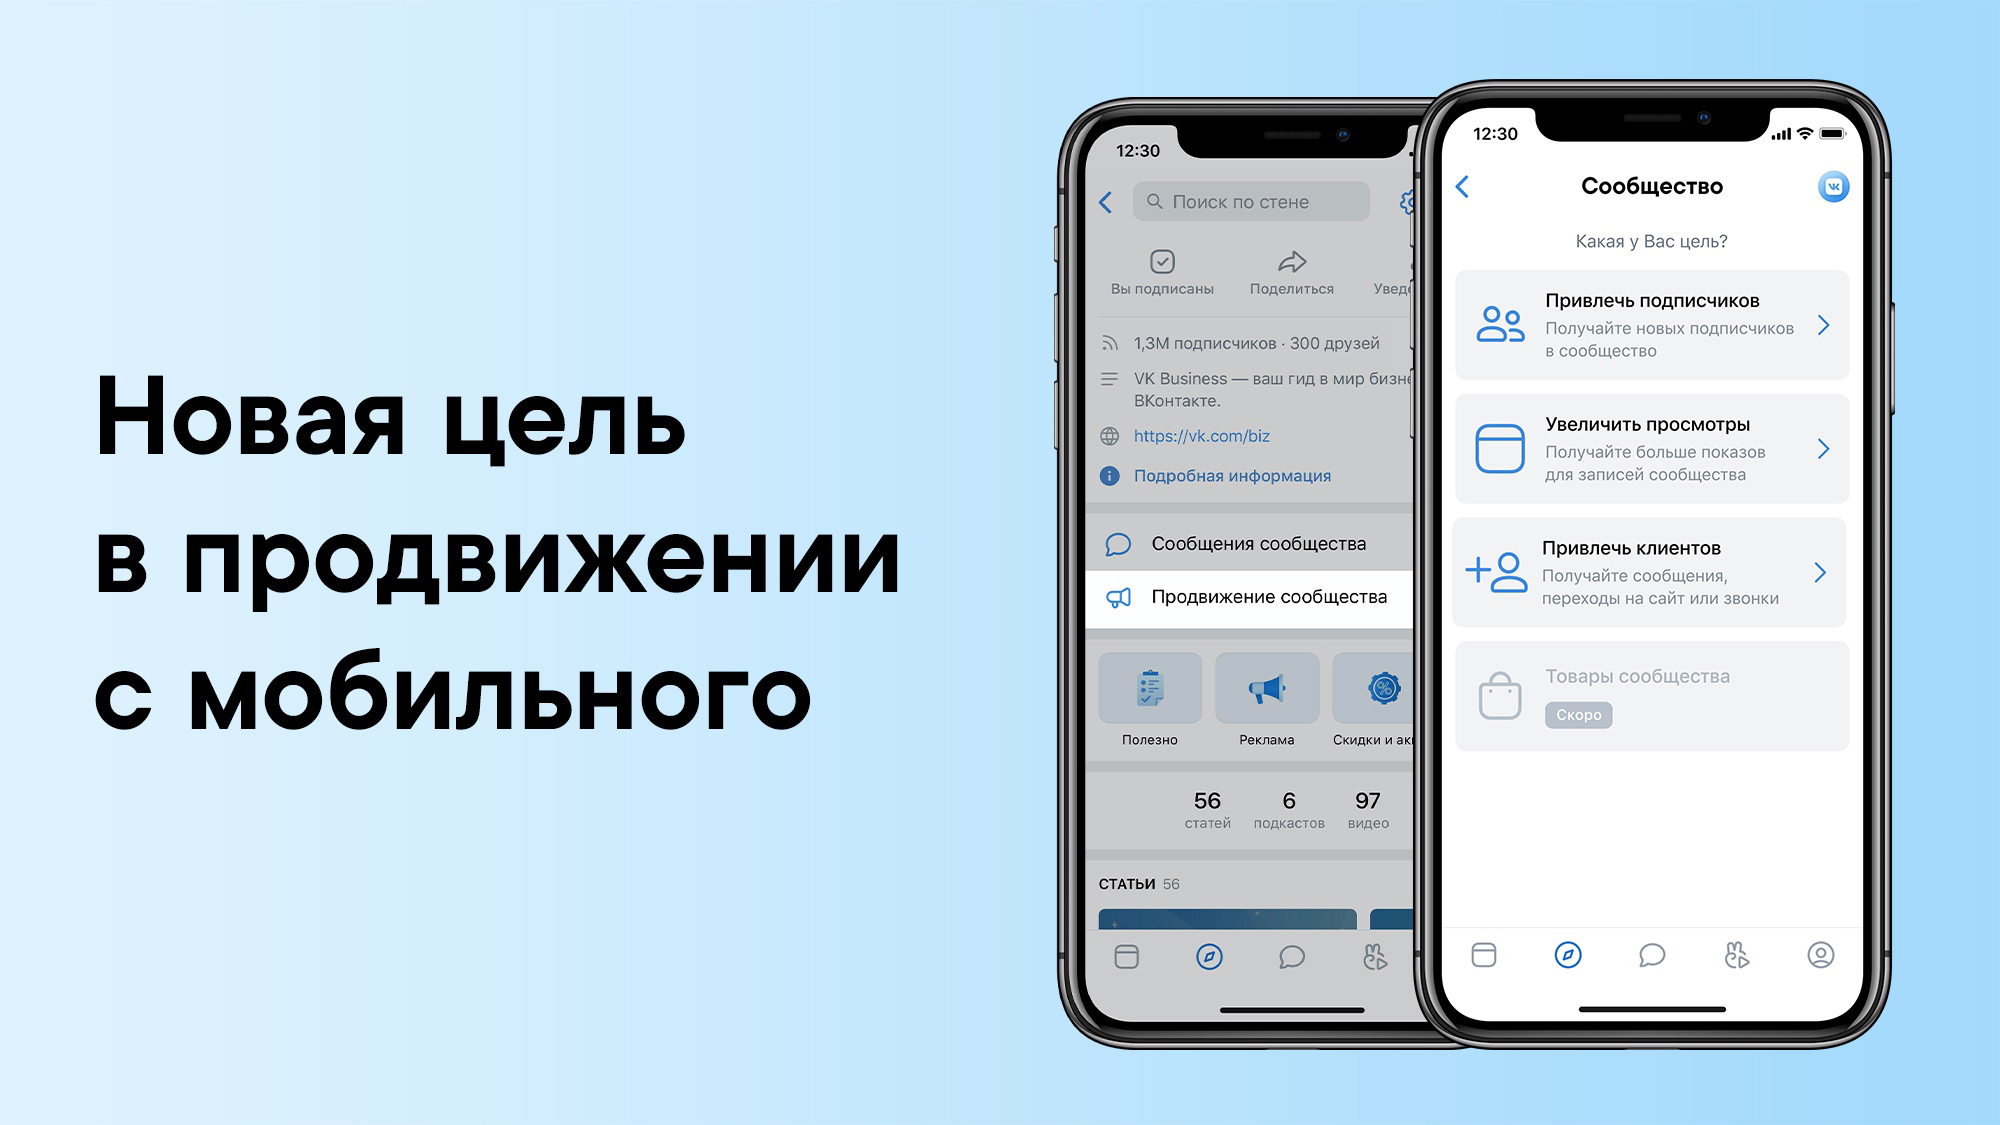 Новая цель для продвижения сообществ ВКонтакте — «Привлечь клиентов»